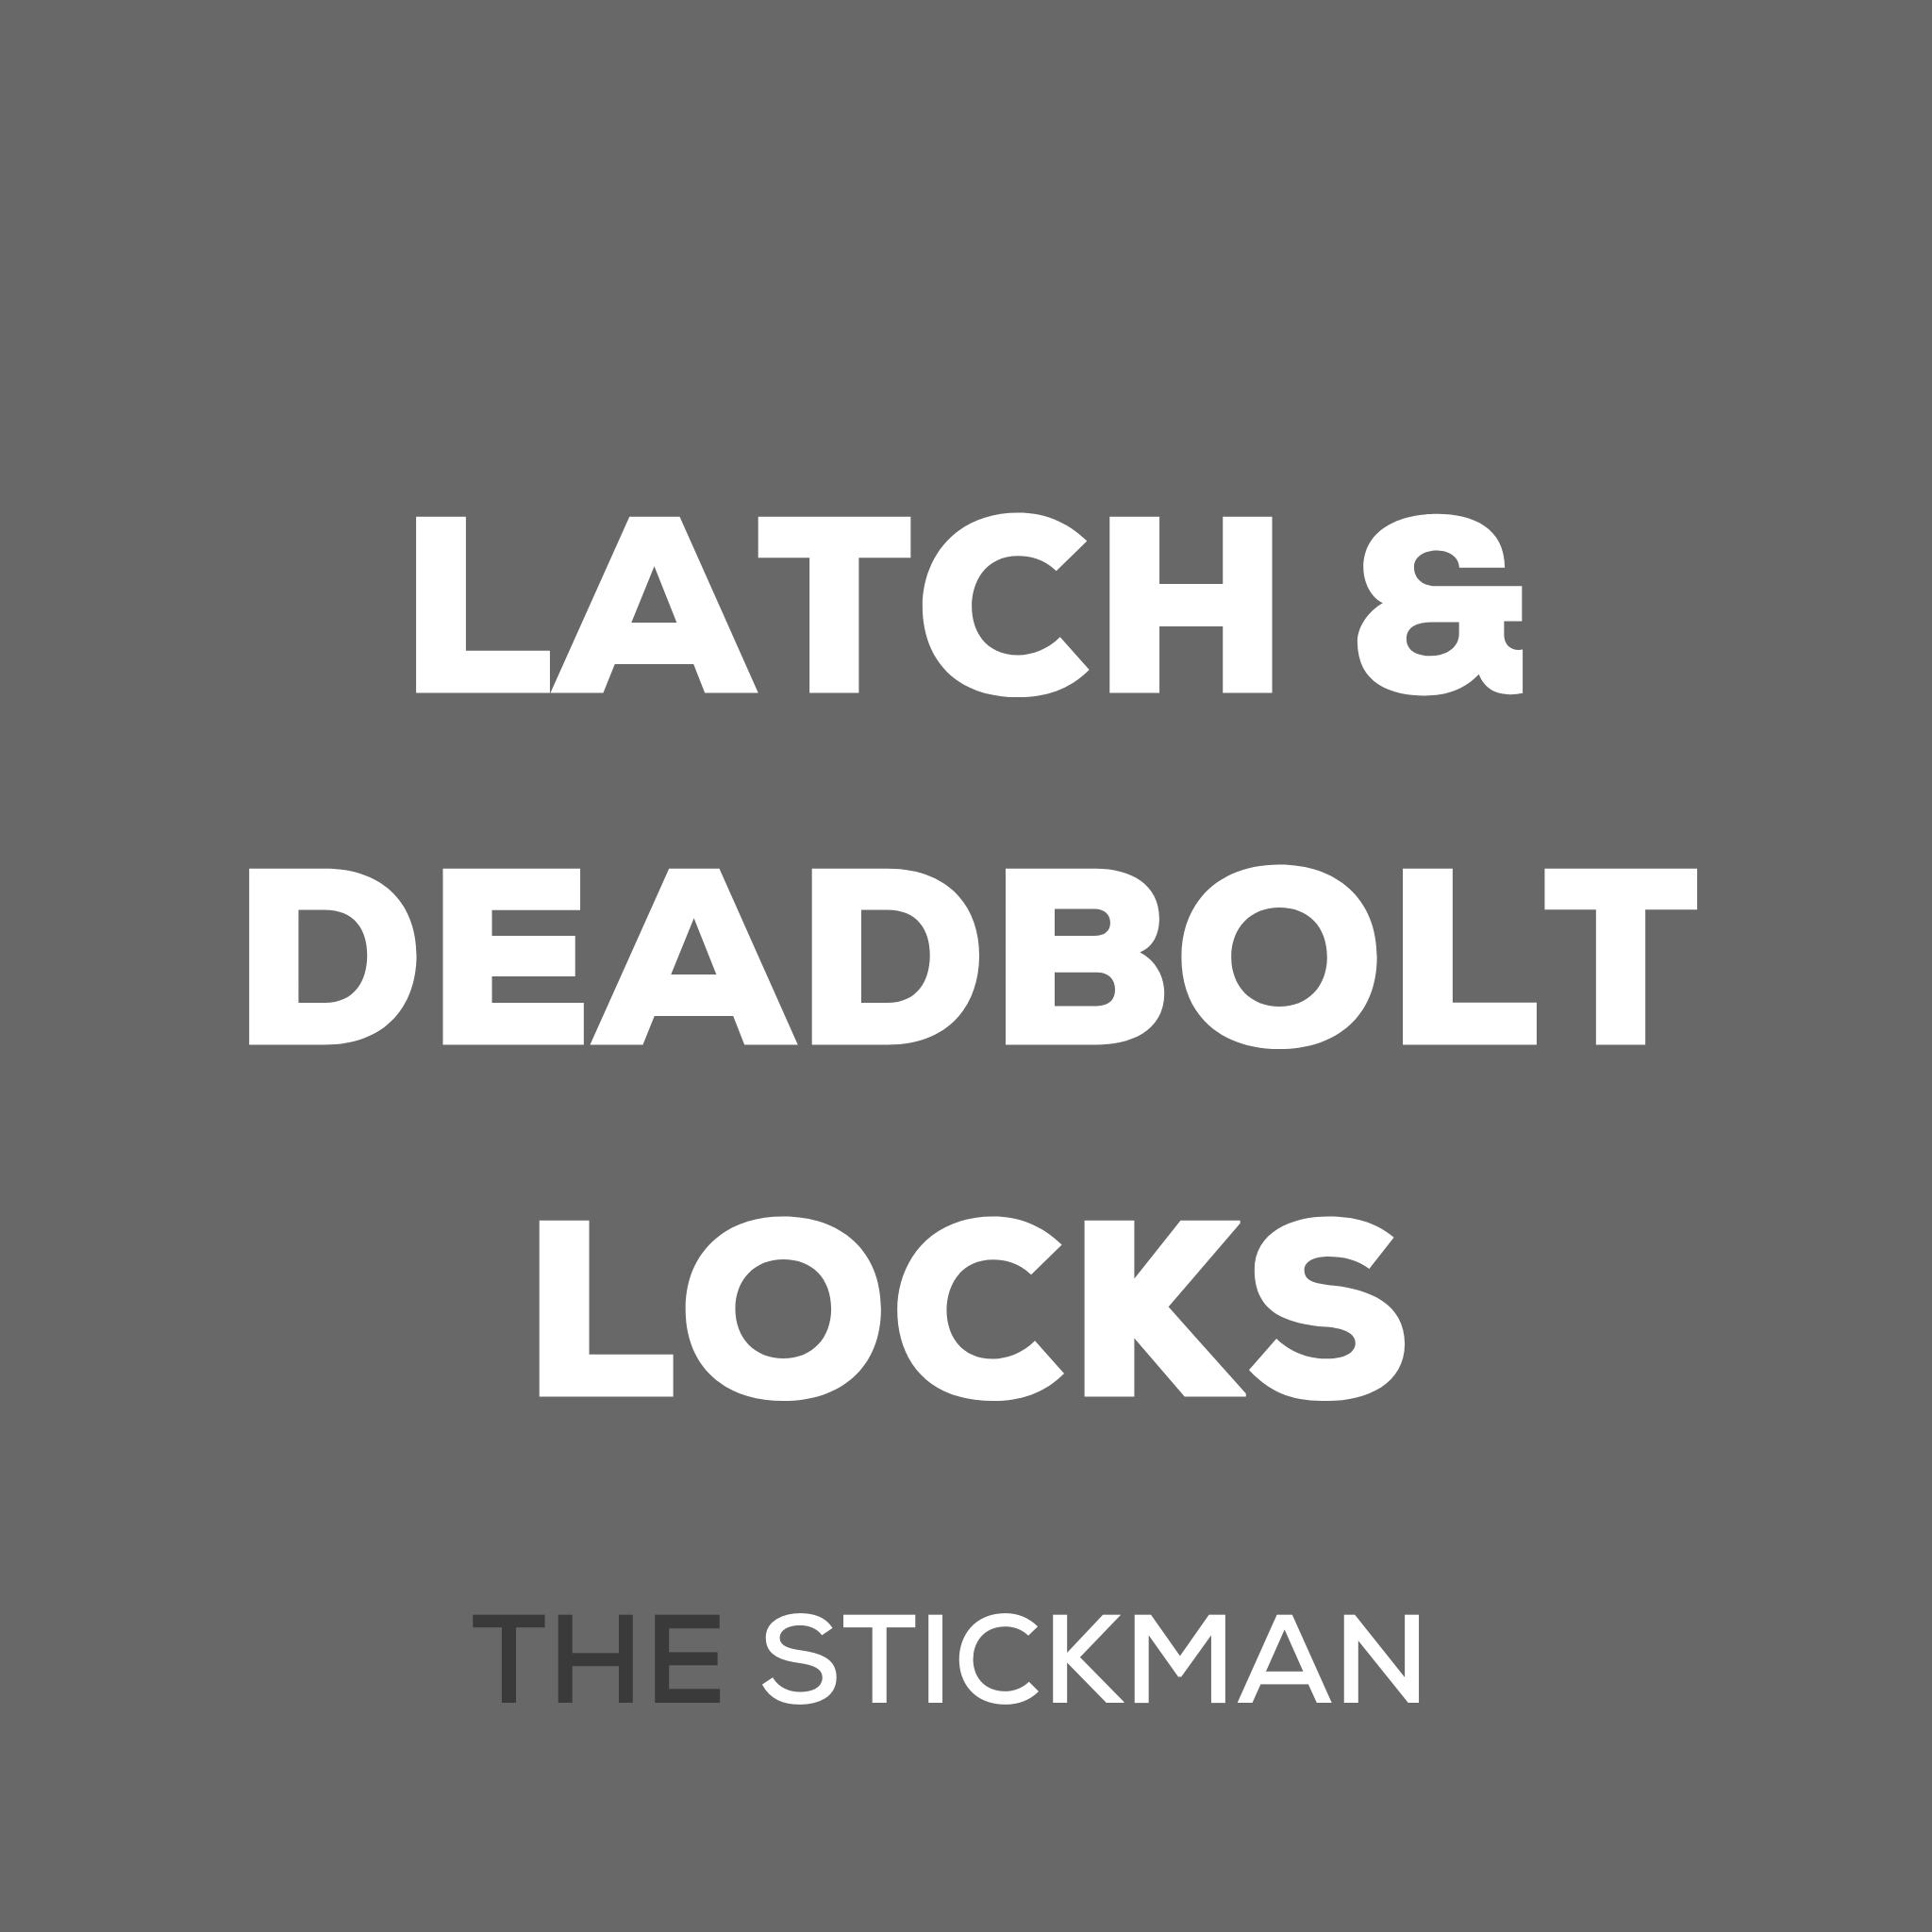 LATCH & DEADBOLT LOCKS